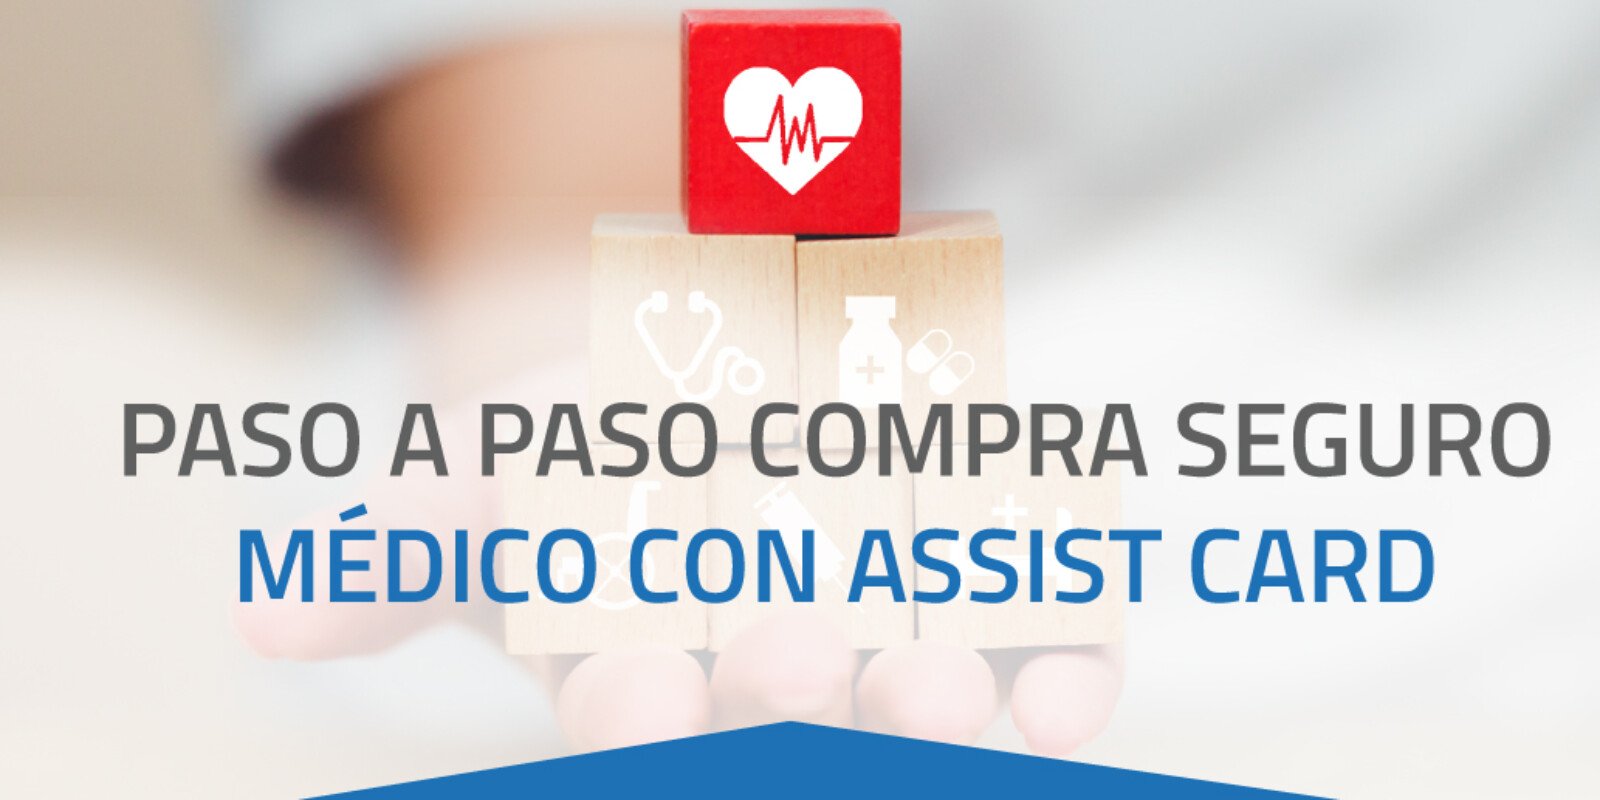 PASO A PASO COMPRA DE SEGURO MÉDICO CON ASSIST CARD